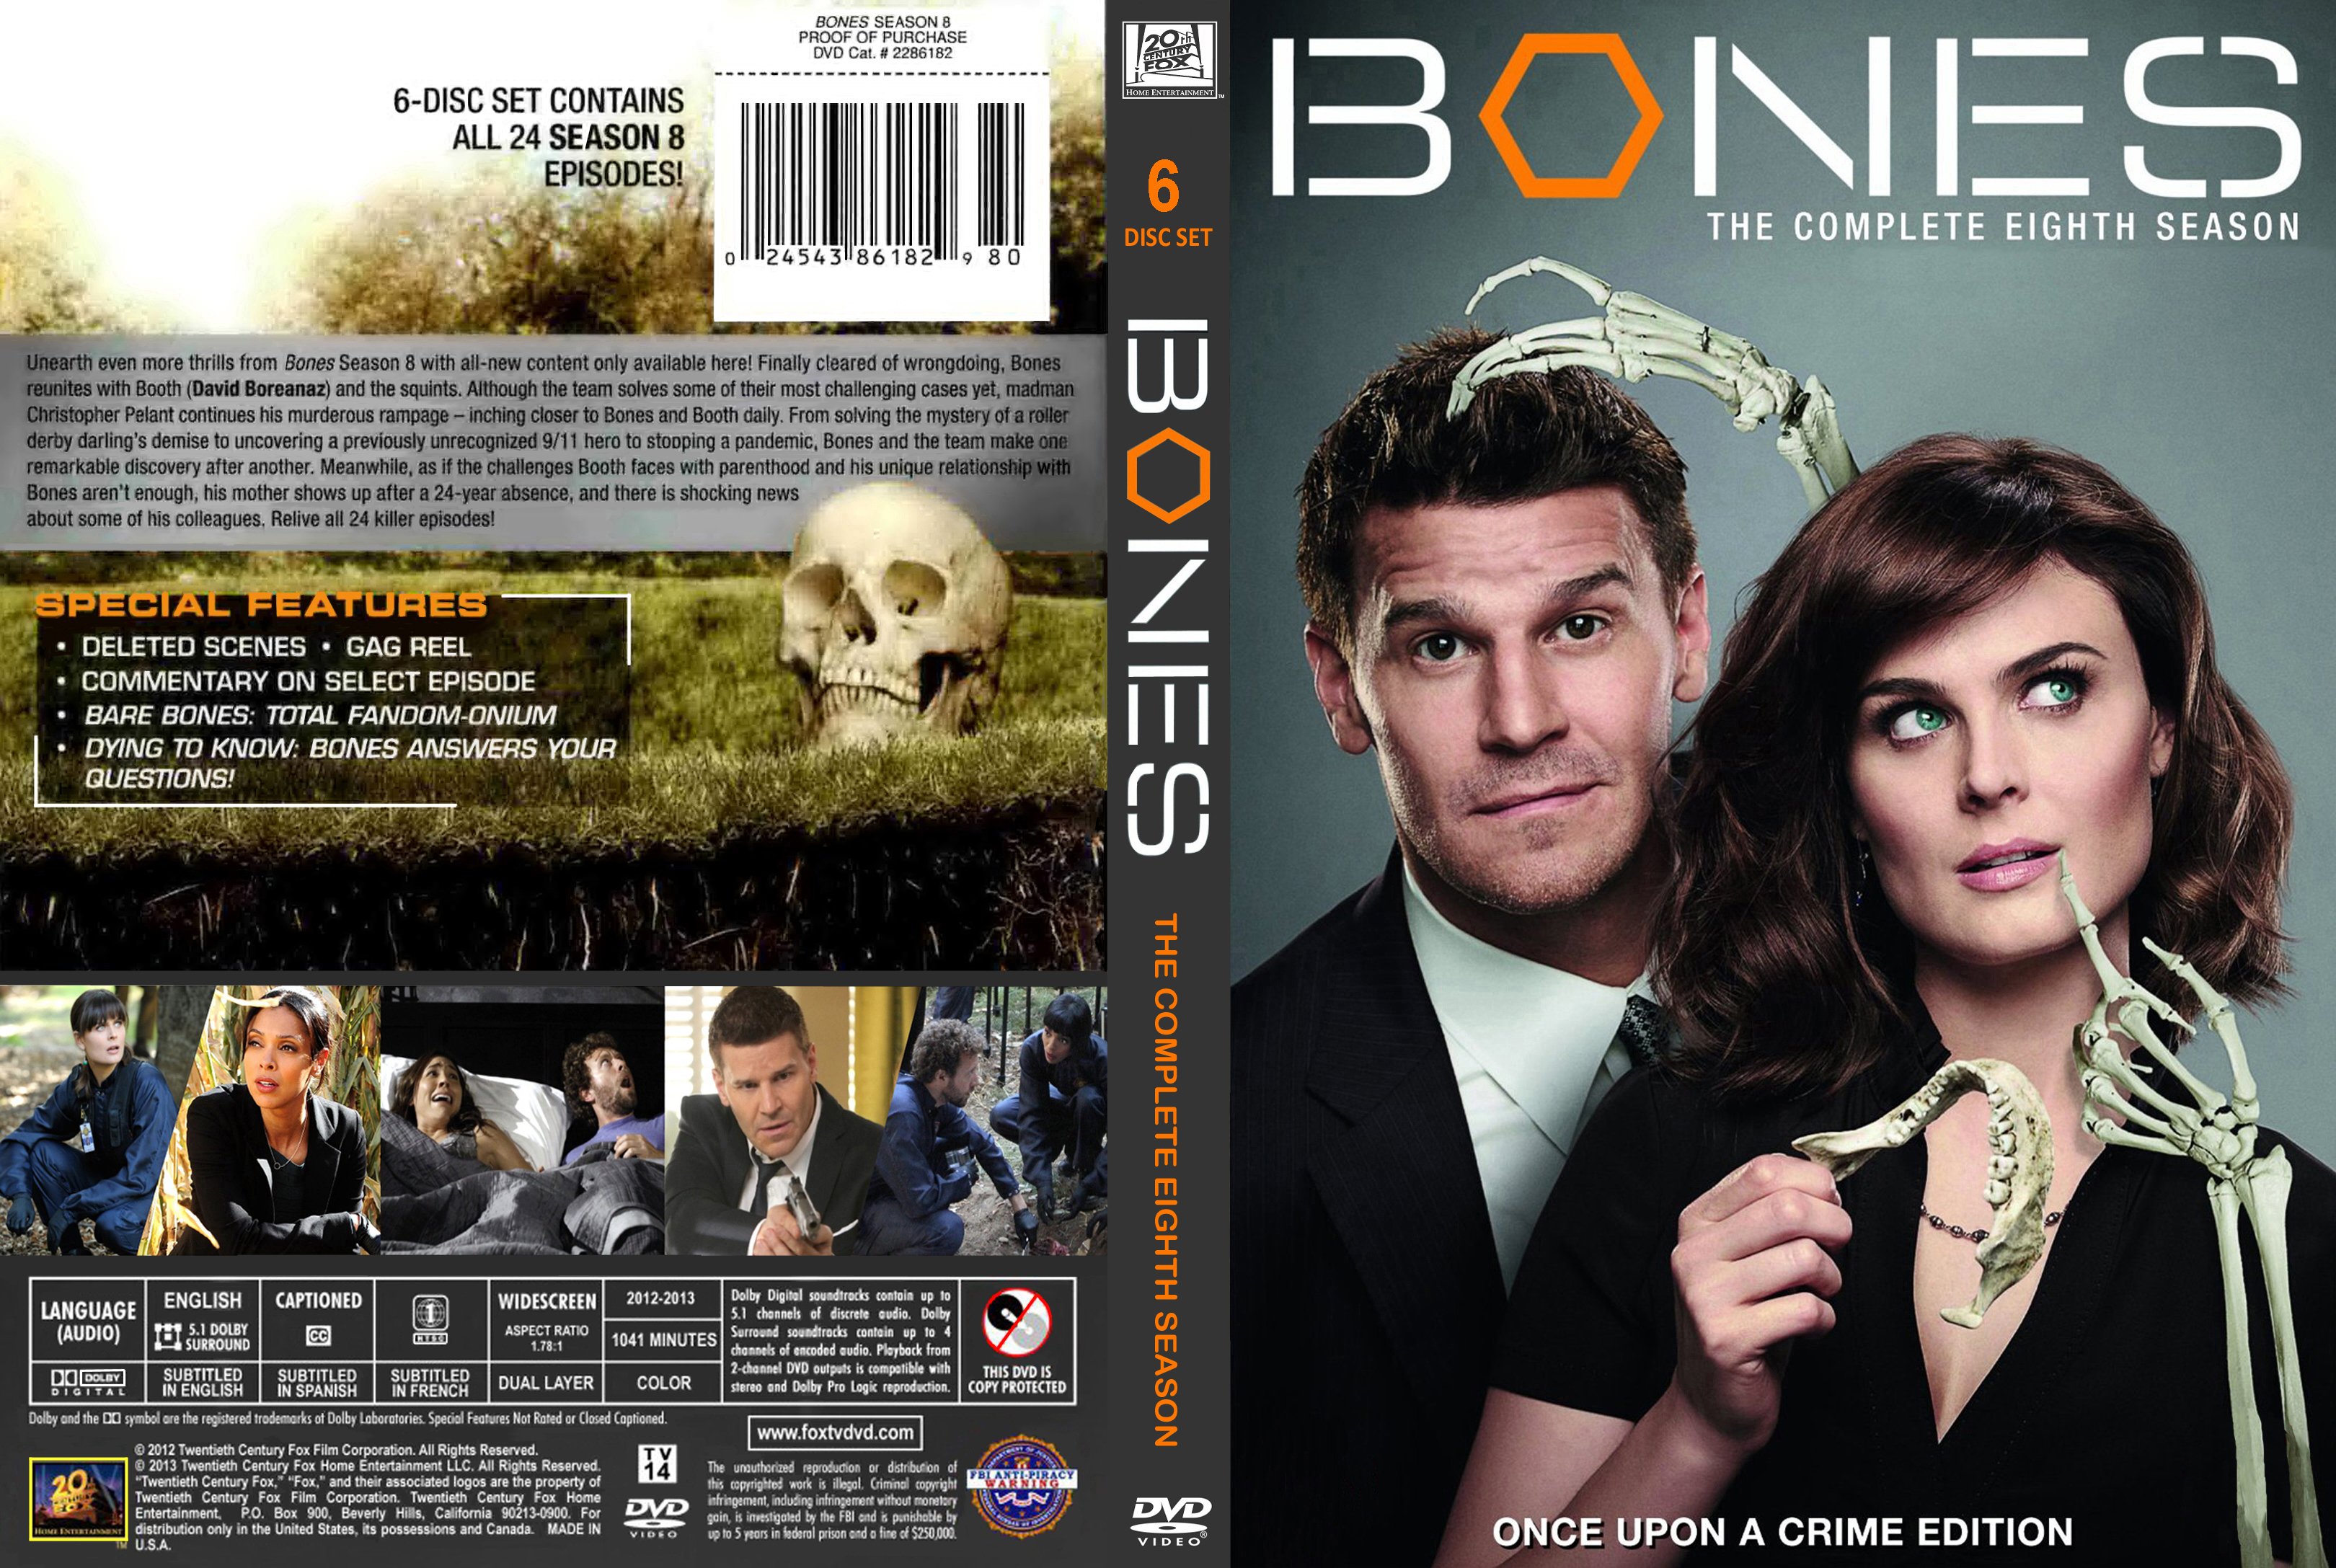 Covers Box Sk Bones Season 8 13 Ws R1 High Quality Dvd Blueray Movie